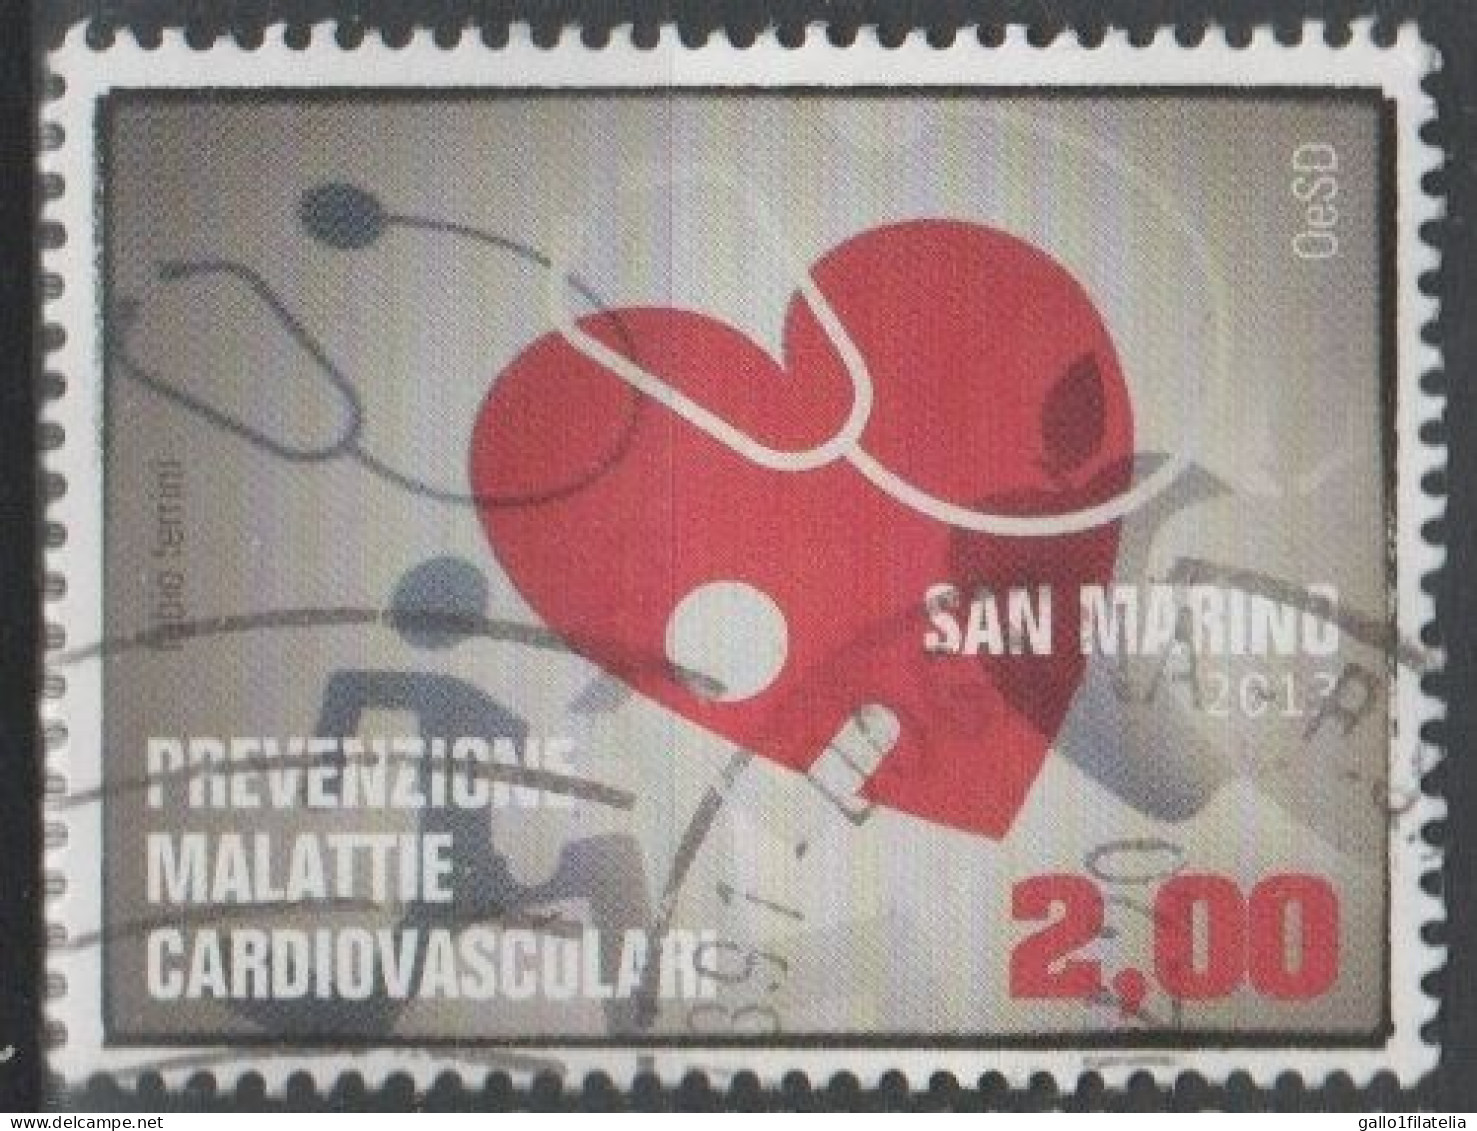 2013 - SAN MARINO - PREVENZIONE MALATTIE CARDIOVASCOLARI / PREVENTION OF CARDIOVASCULAR DISEASES. USATO - Used Stamps